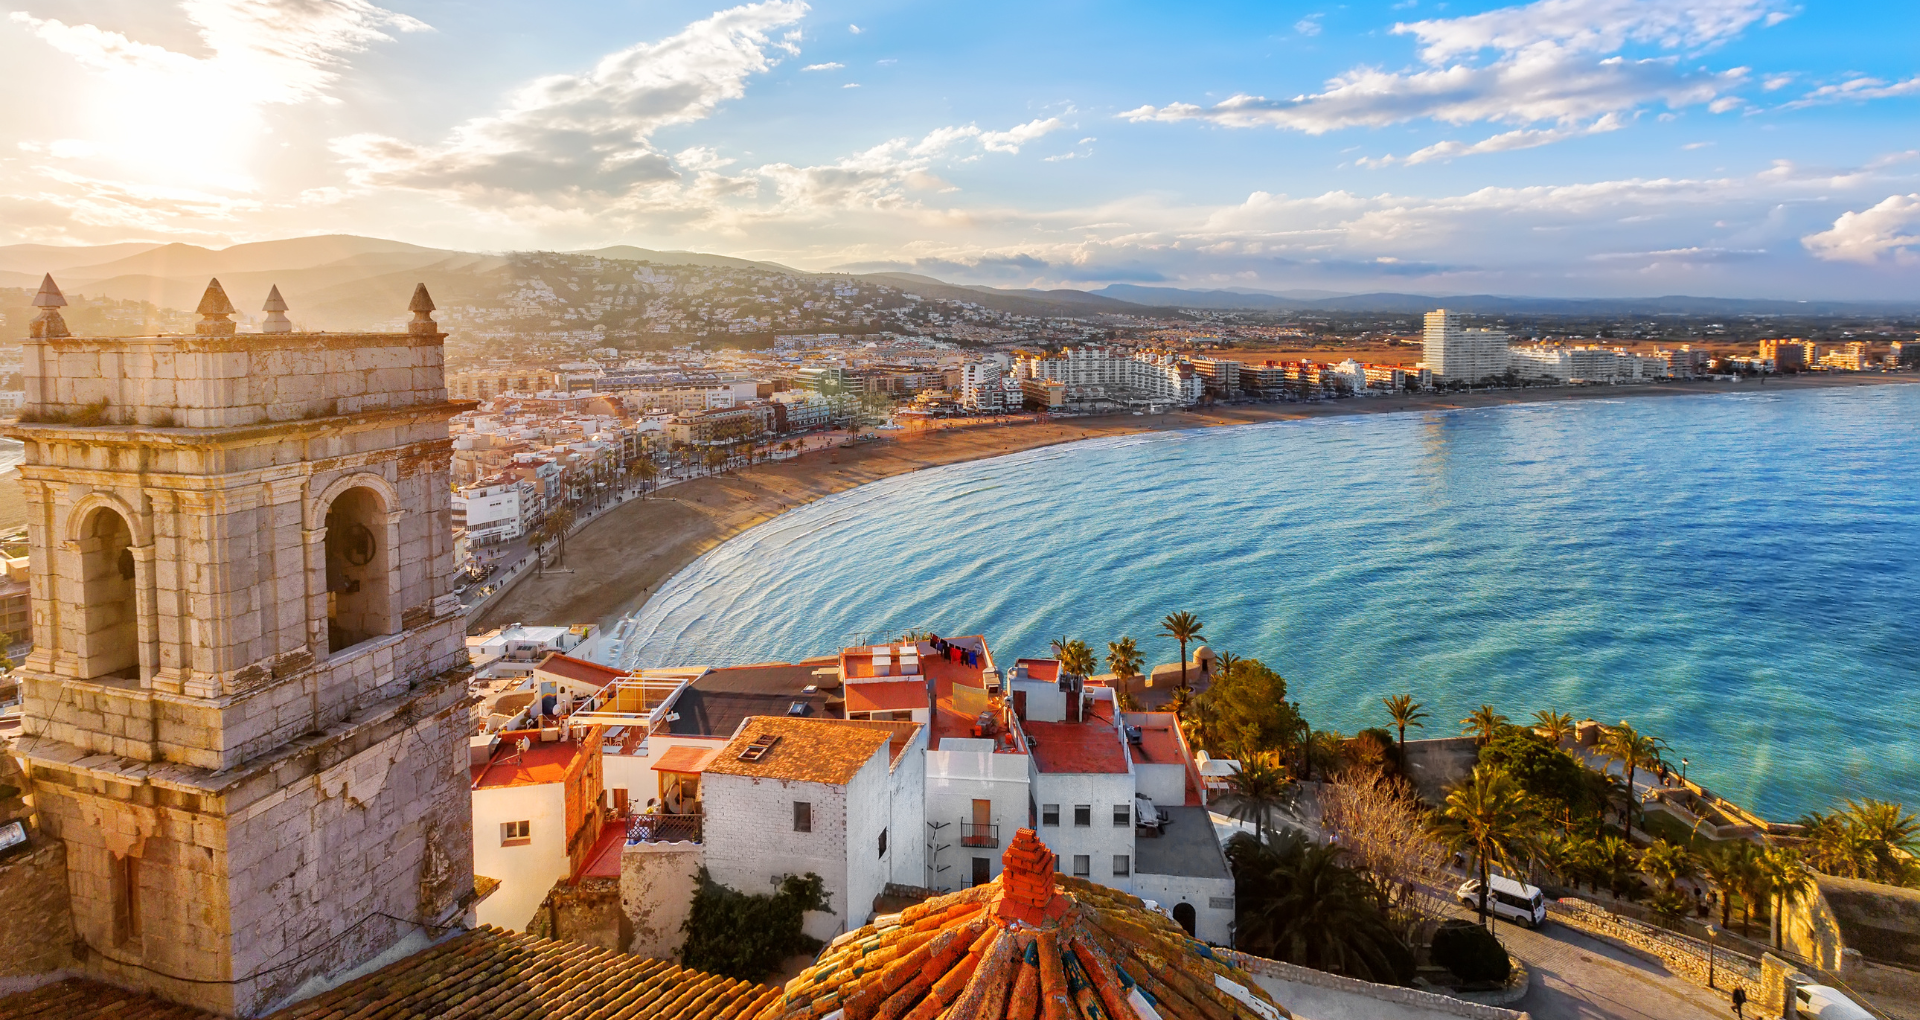 Vue panoramique sur une ville en Espagne et la mer